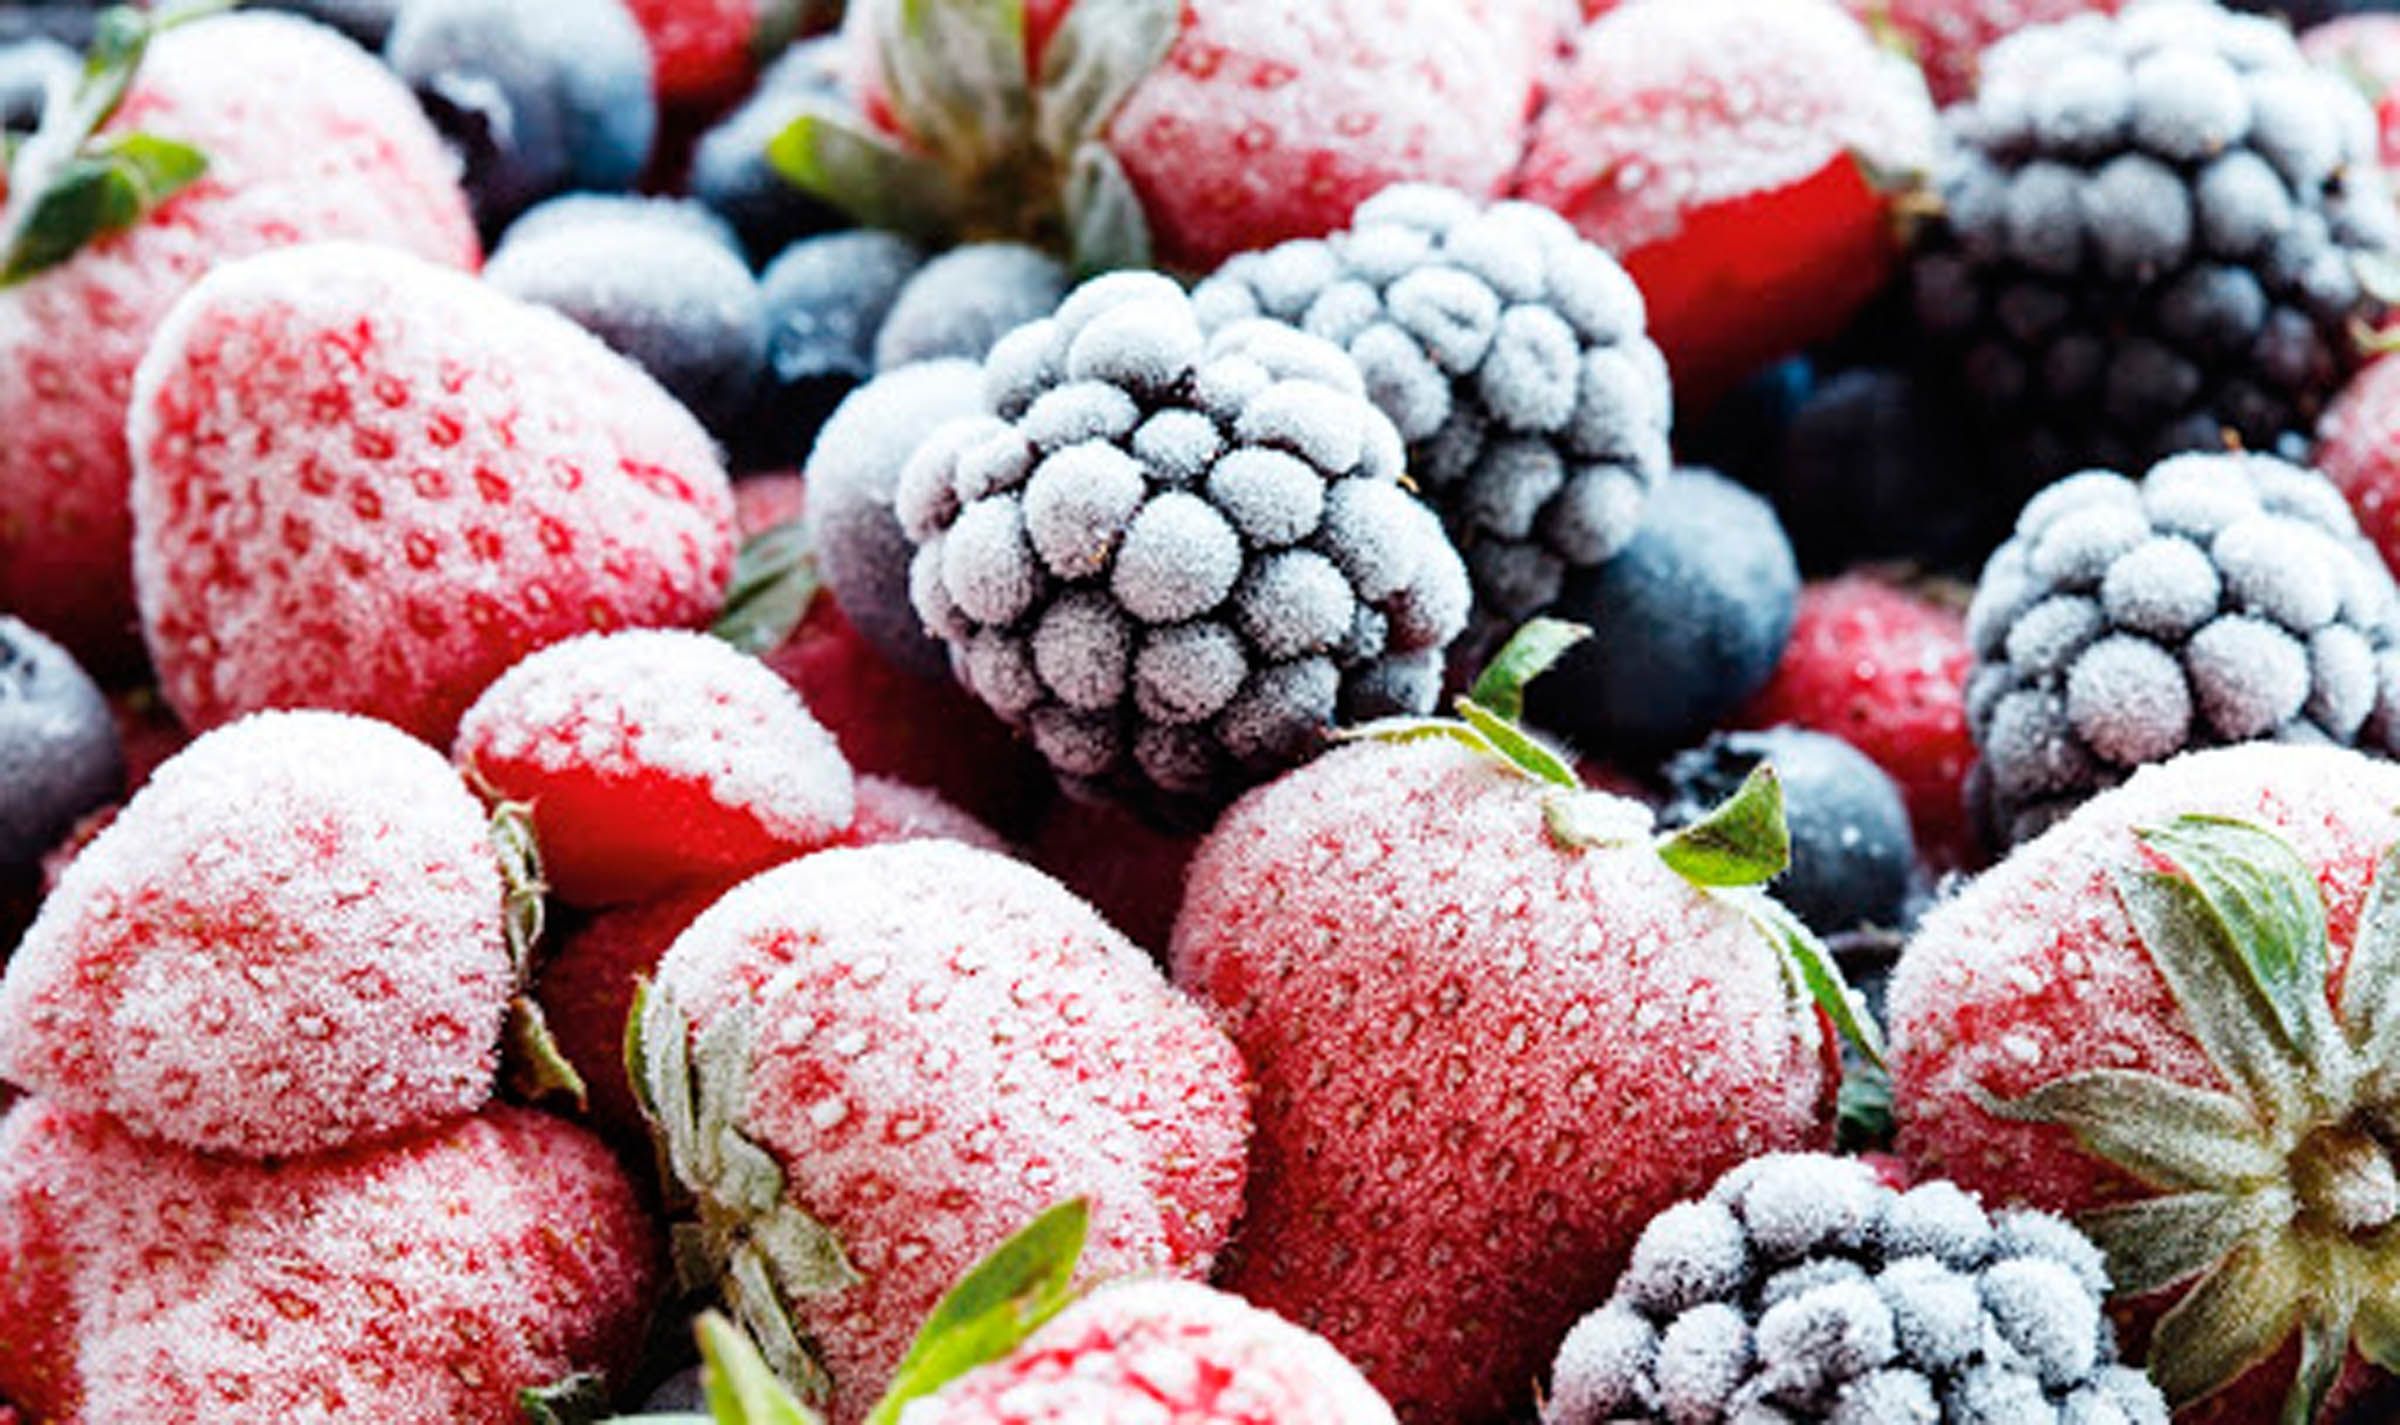 Безопасность и качество: ученые представили новый метод замораживания овощей, фруктов и ягод - Агро